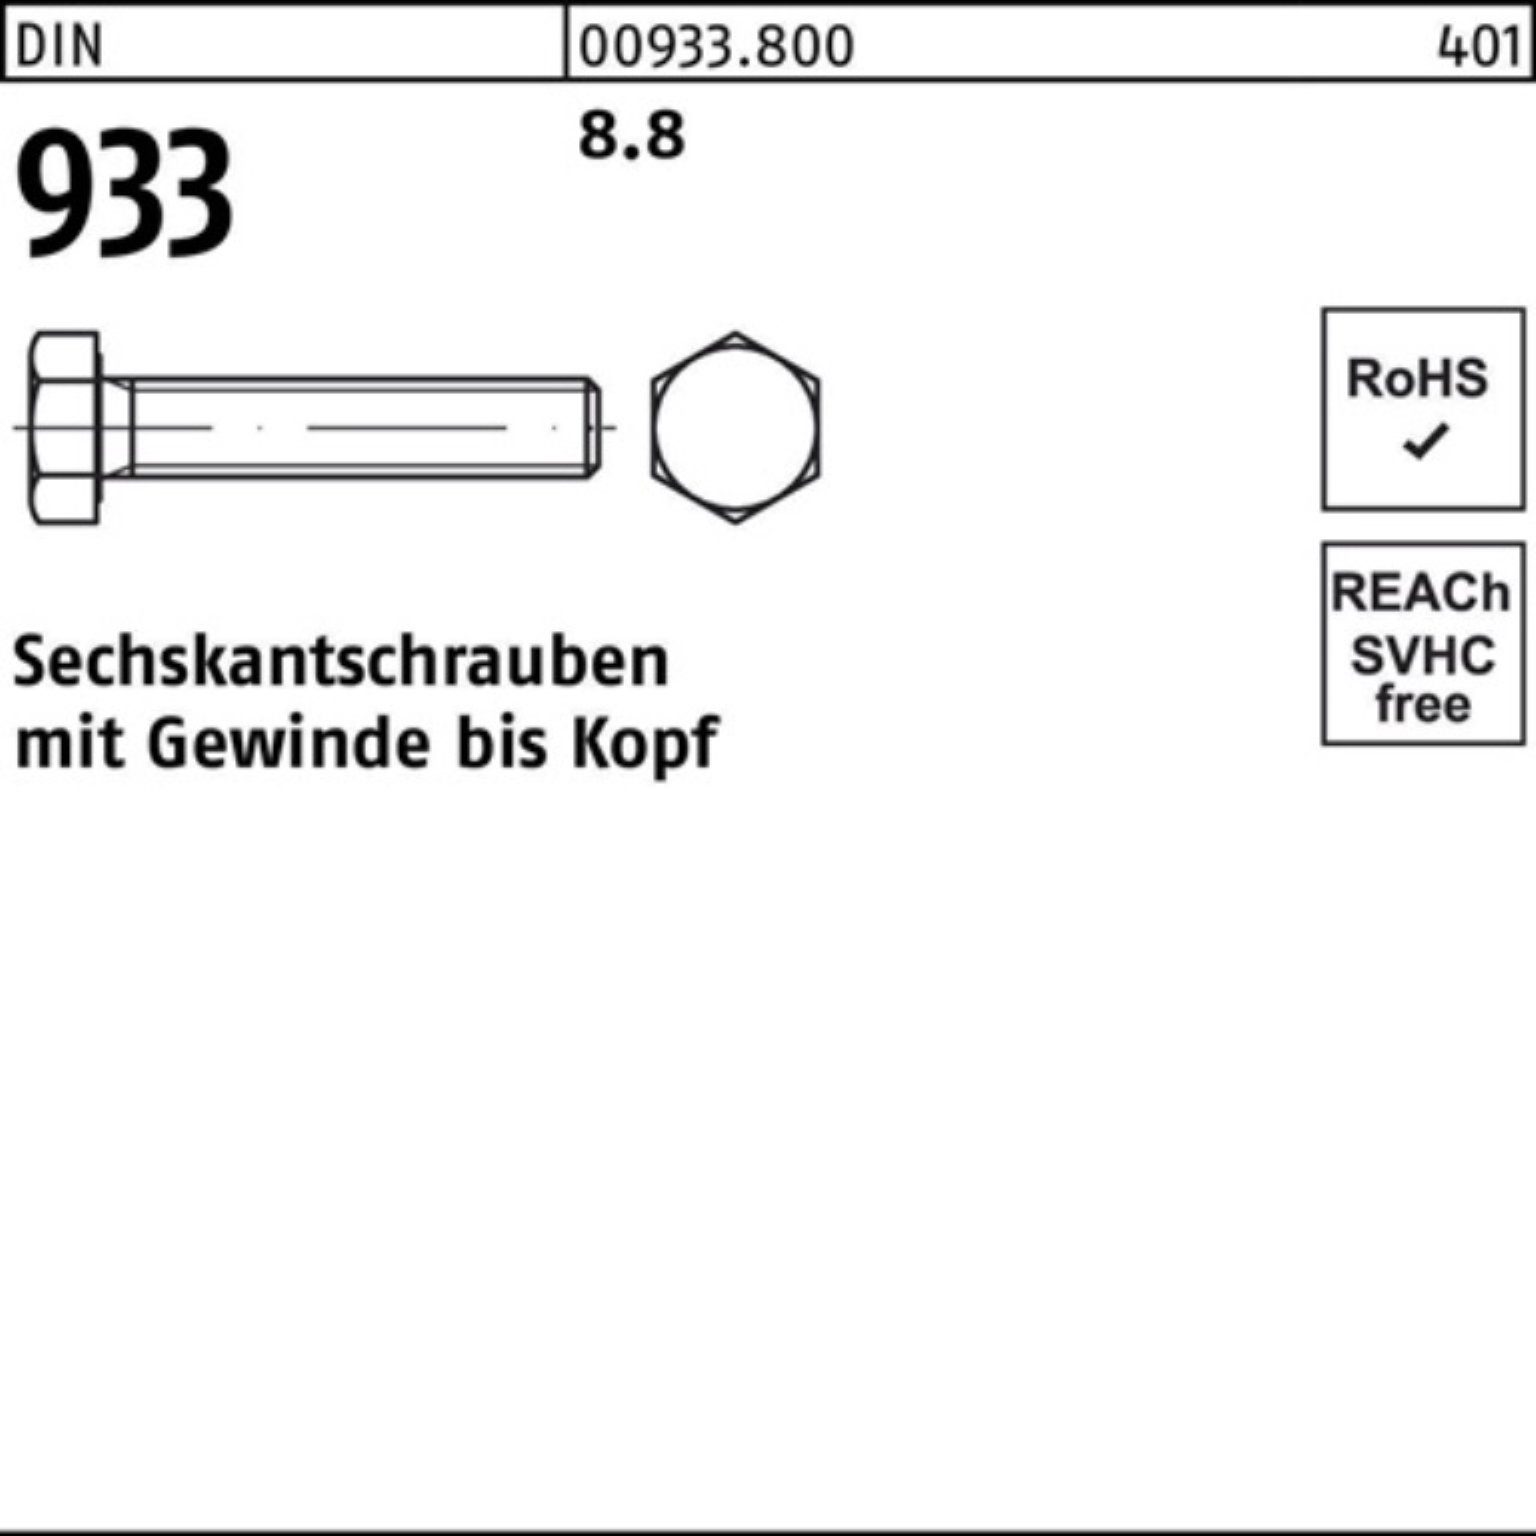 Reyher Sechskantschraube 100er Pack 220 Stück DIN VG 8.8 Sechskantschraube 933 1 M24x 933 DIN